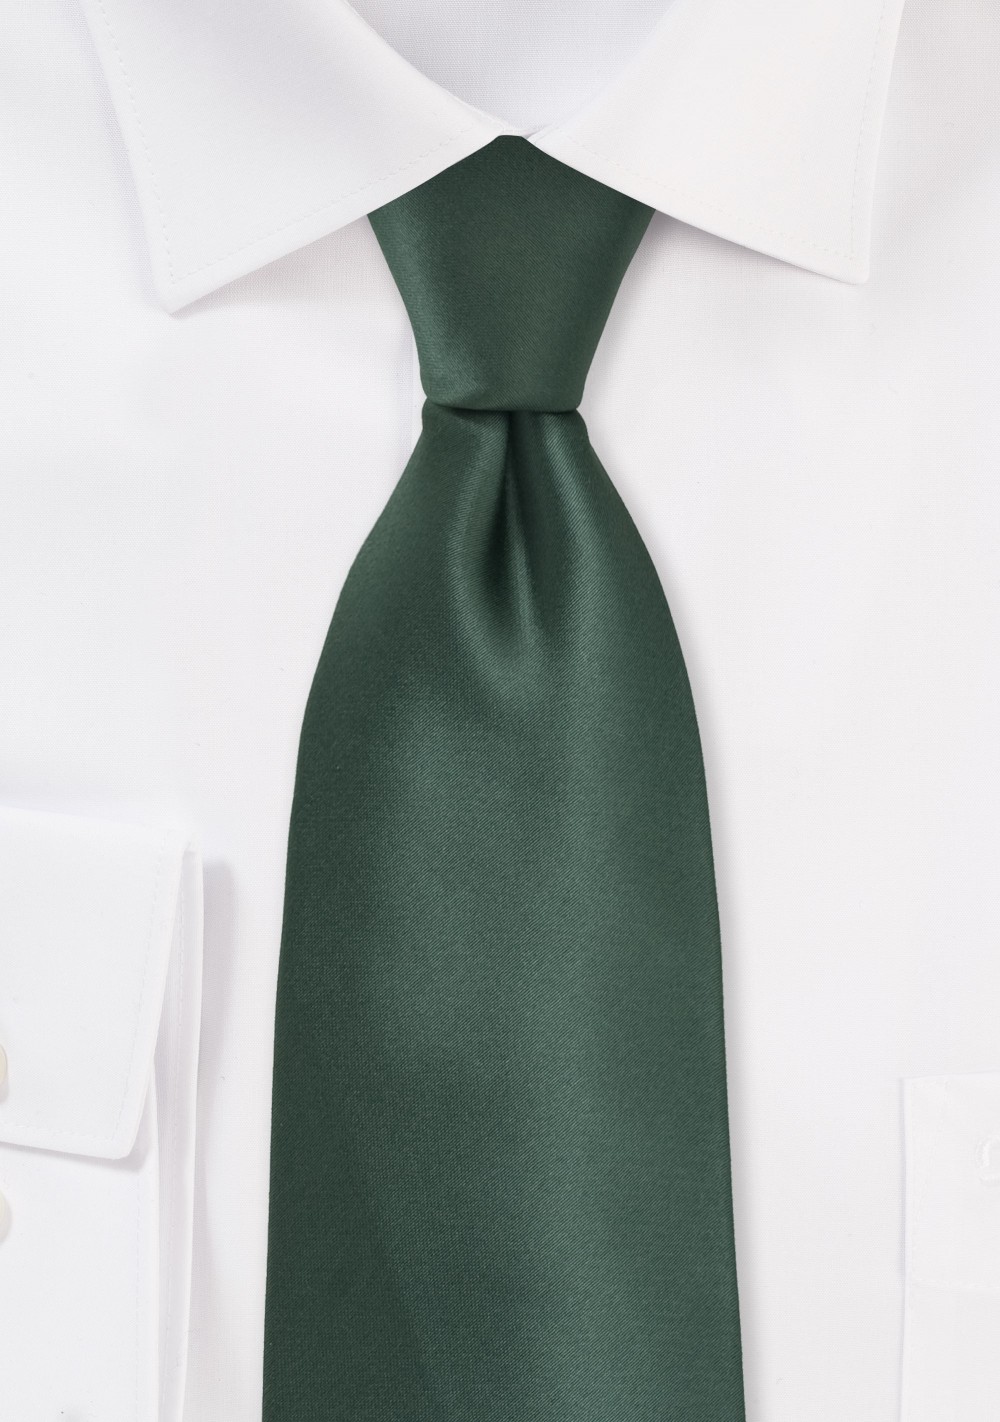 Pine Green Mens Necktie